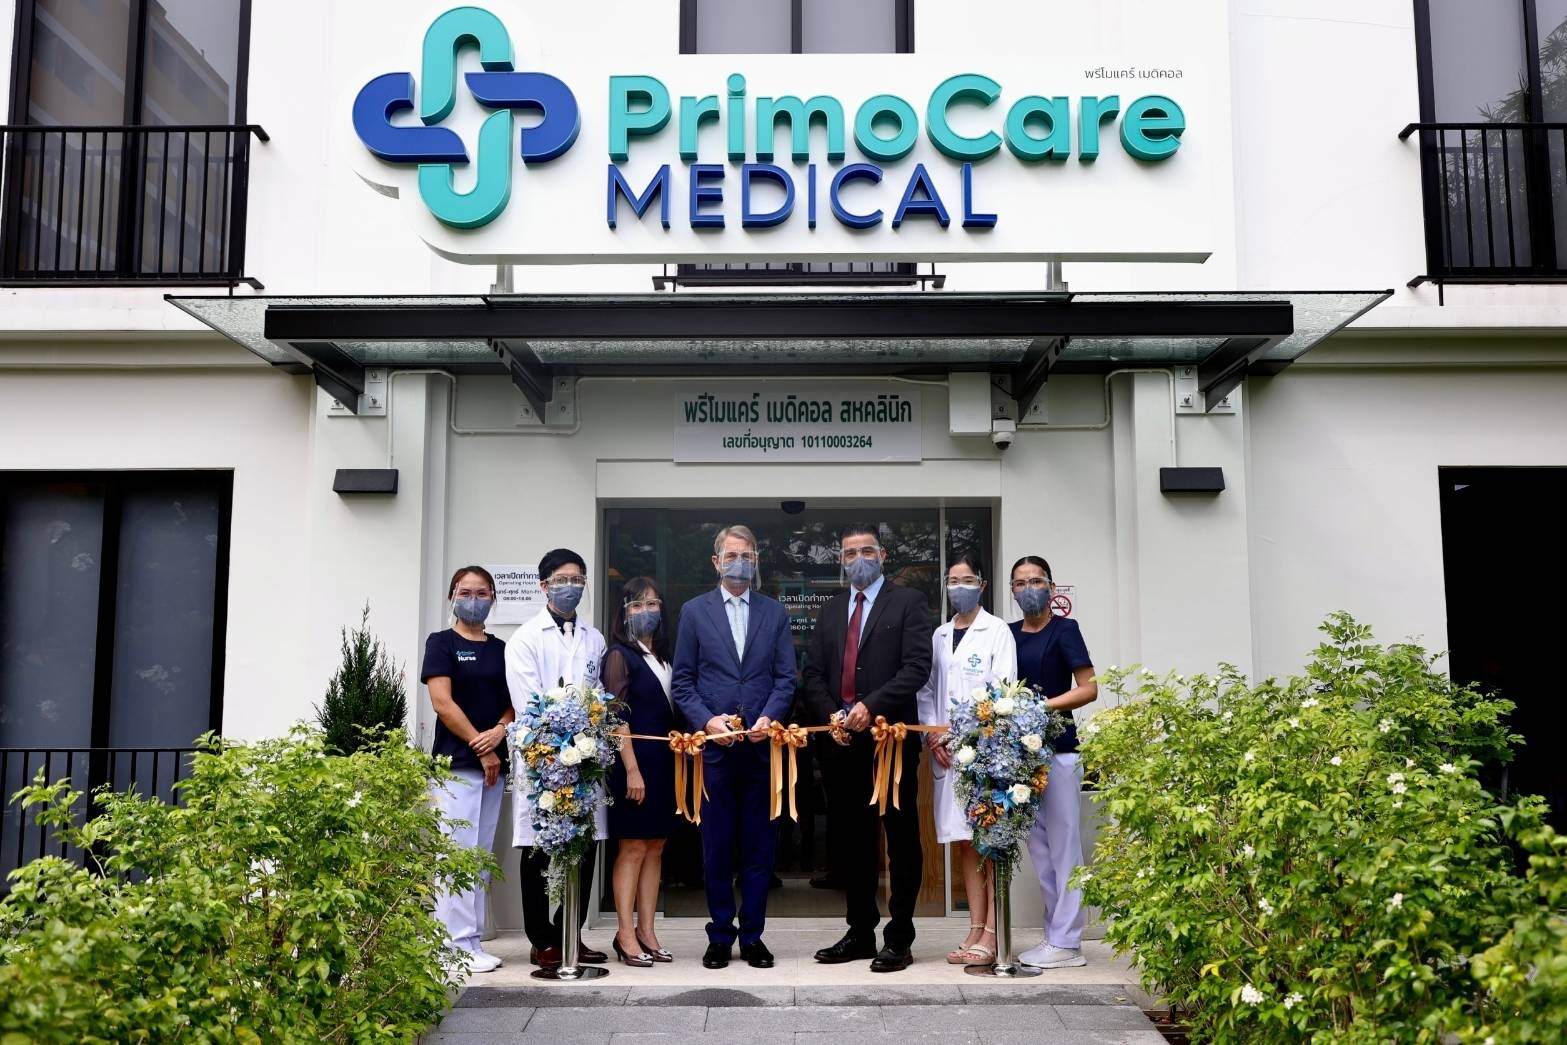 บี.กริม รุกธุรกิจเฮลท์แคร์ เปิดตัว "พรีโมแคร์ เมดิคอล คลินิก" อย่างเป็นทางการมุ่งดูแลรักษาสุขภาพคนไทยอย่างยั่งยืน